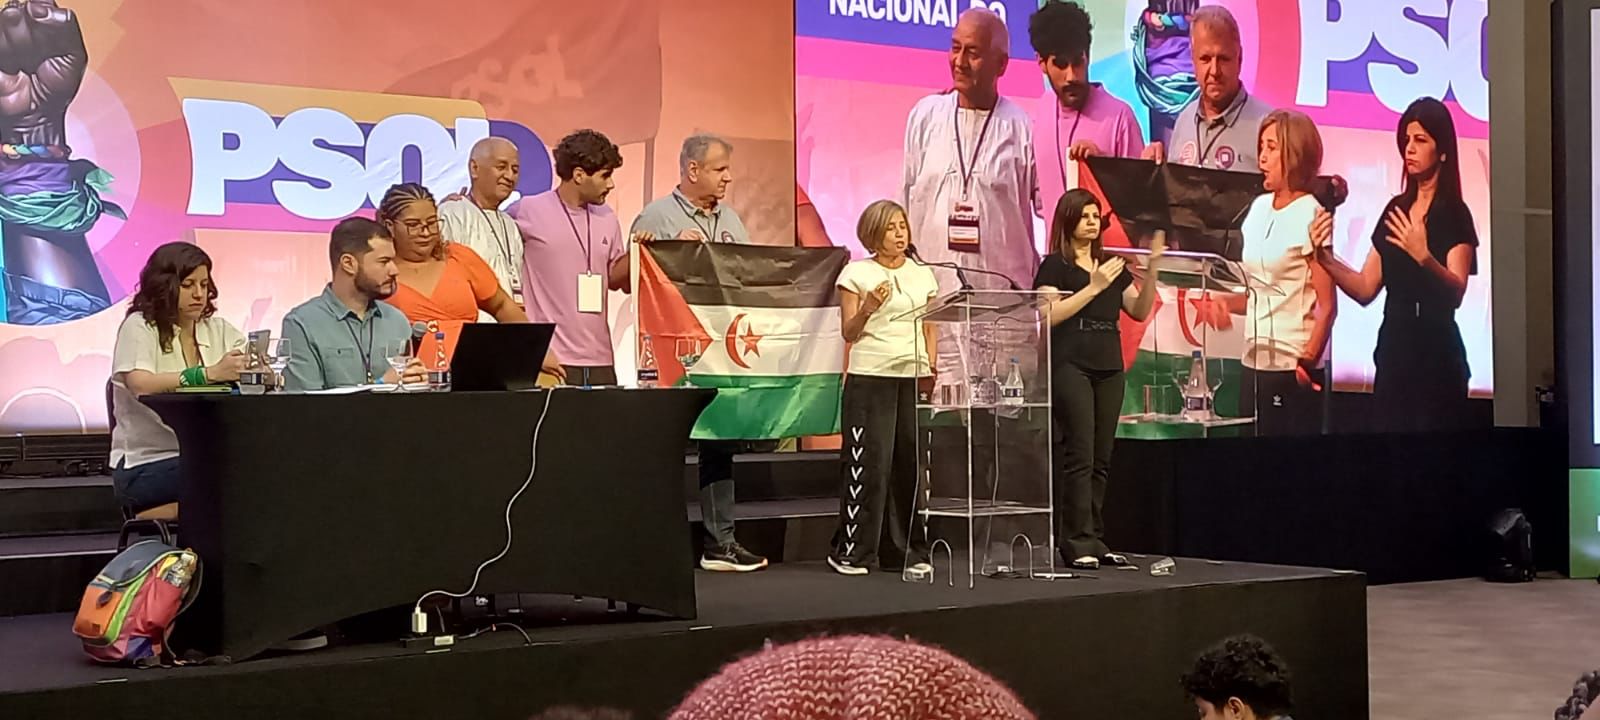 المؤتمر الثامن لحزب الاشتراكية والحرية البرازيلي يصادق بالاجماع على توصية تدعم كفاح الشعب الصحراوي العادل